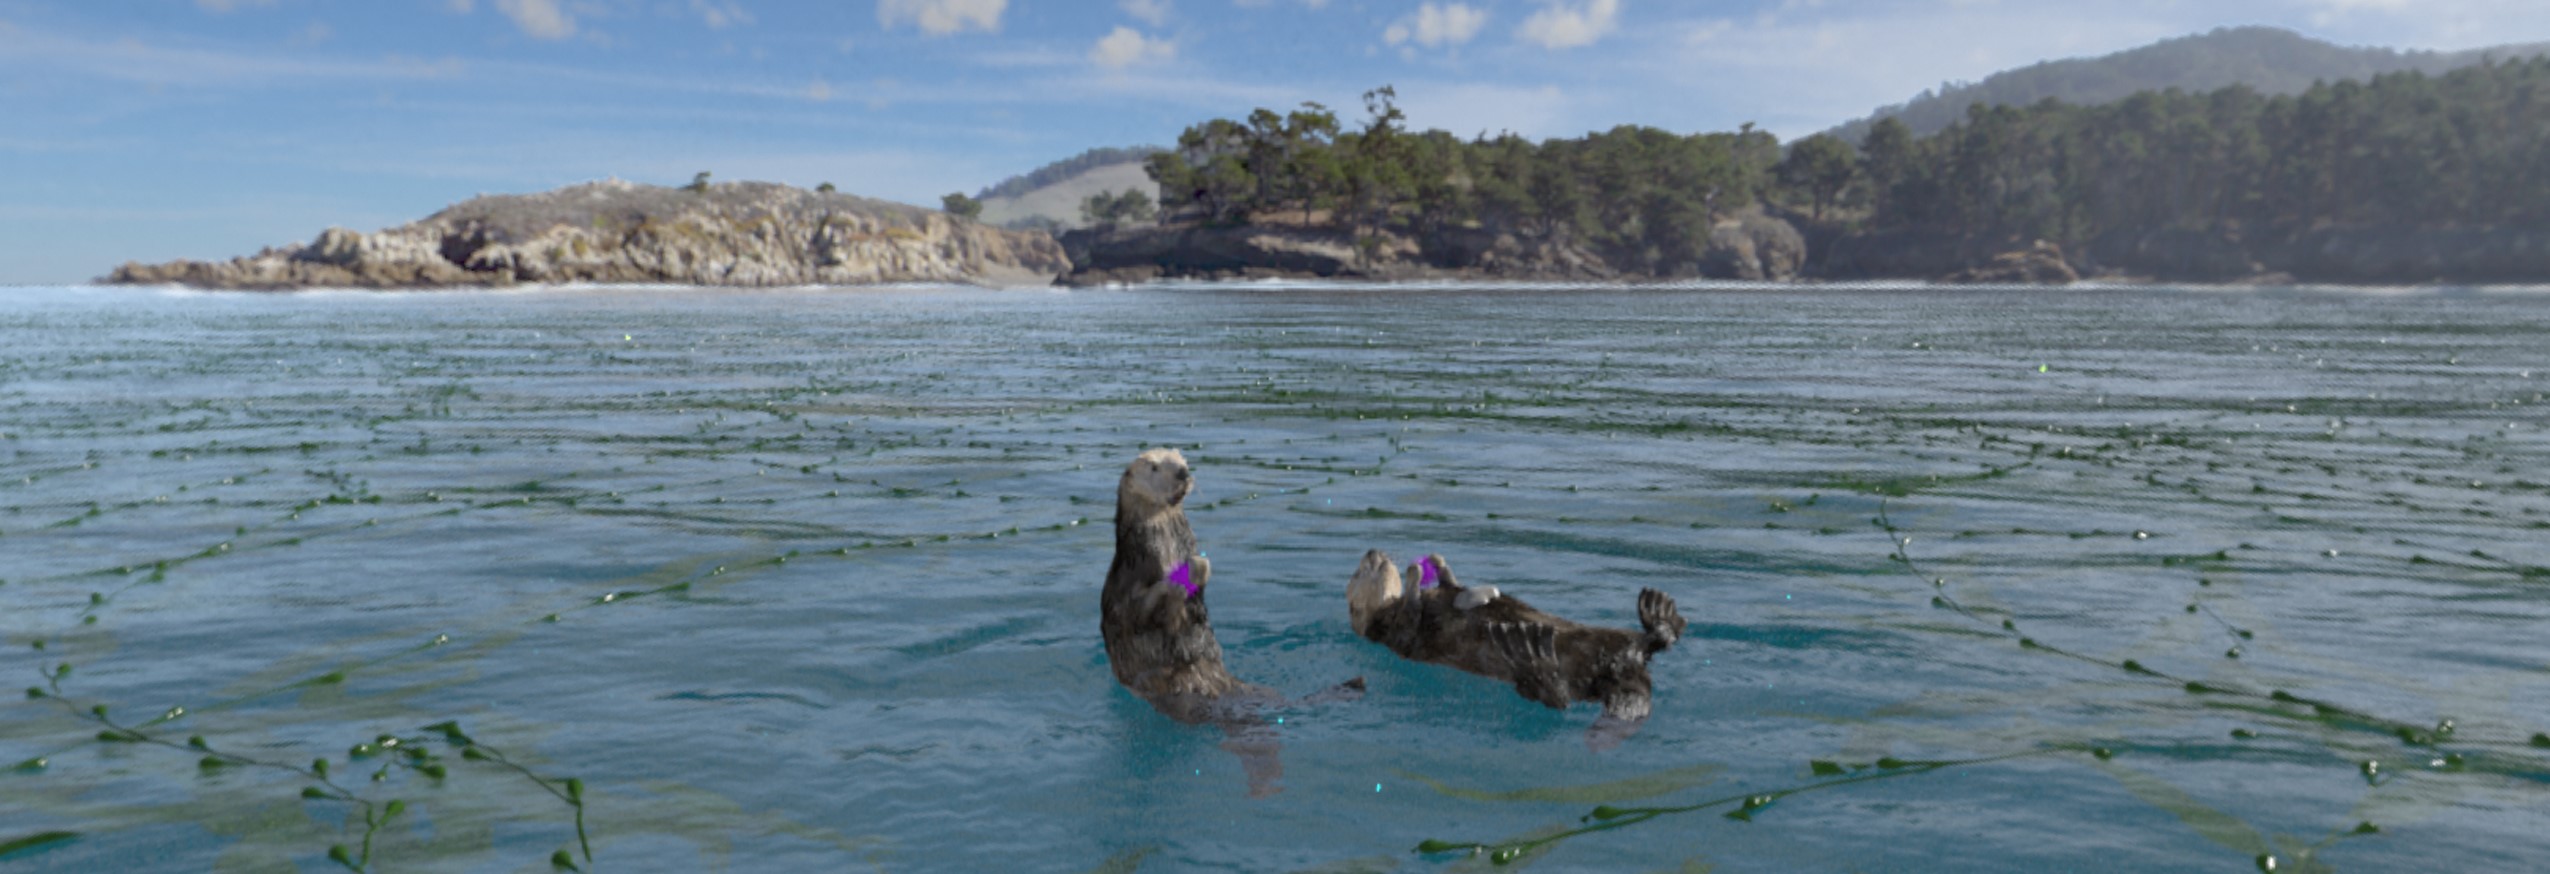 Otter in einem algenreichen Gewässer vor teils waldiger, teils felsiger Küstenlandschaft unter blauem Himmel